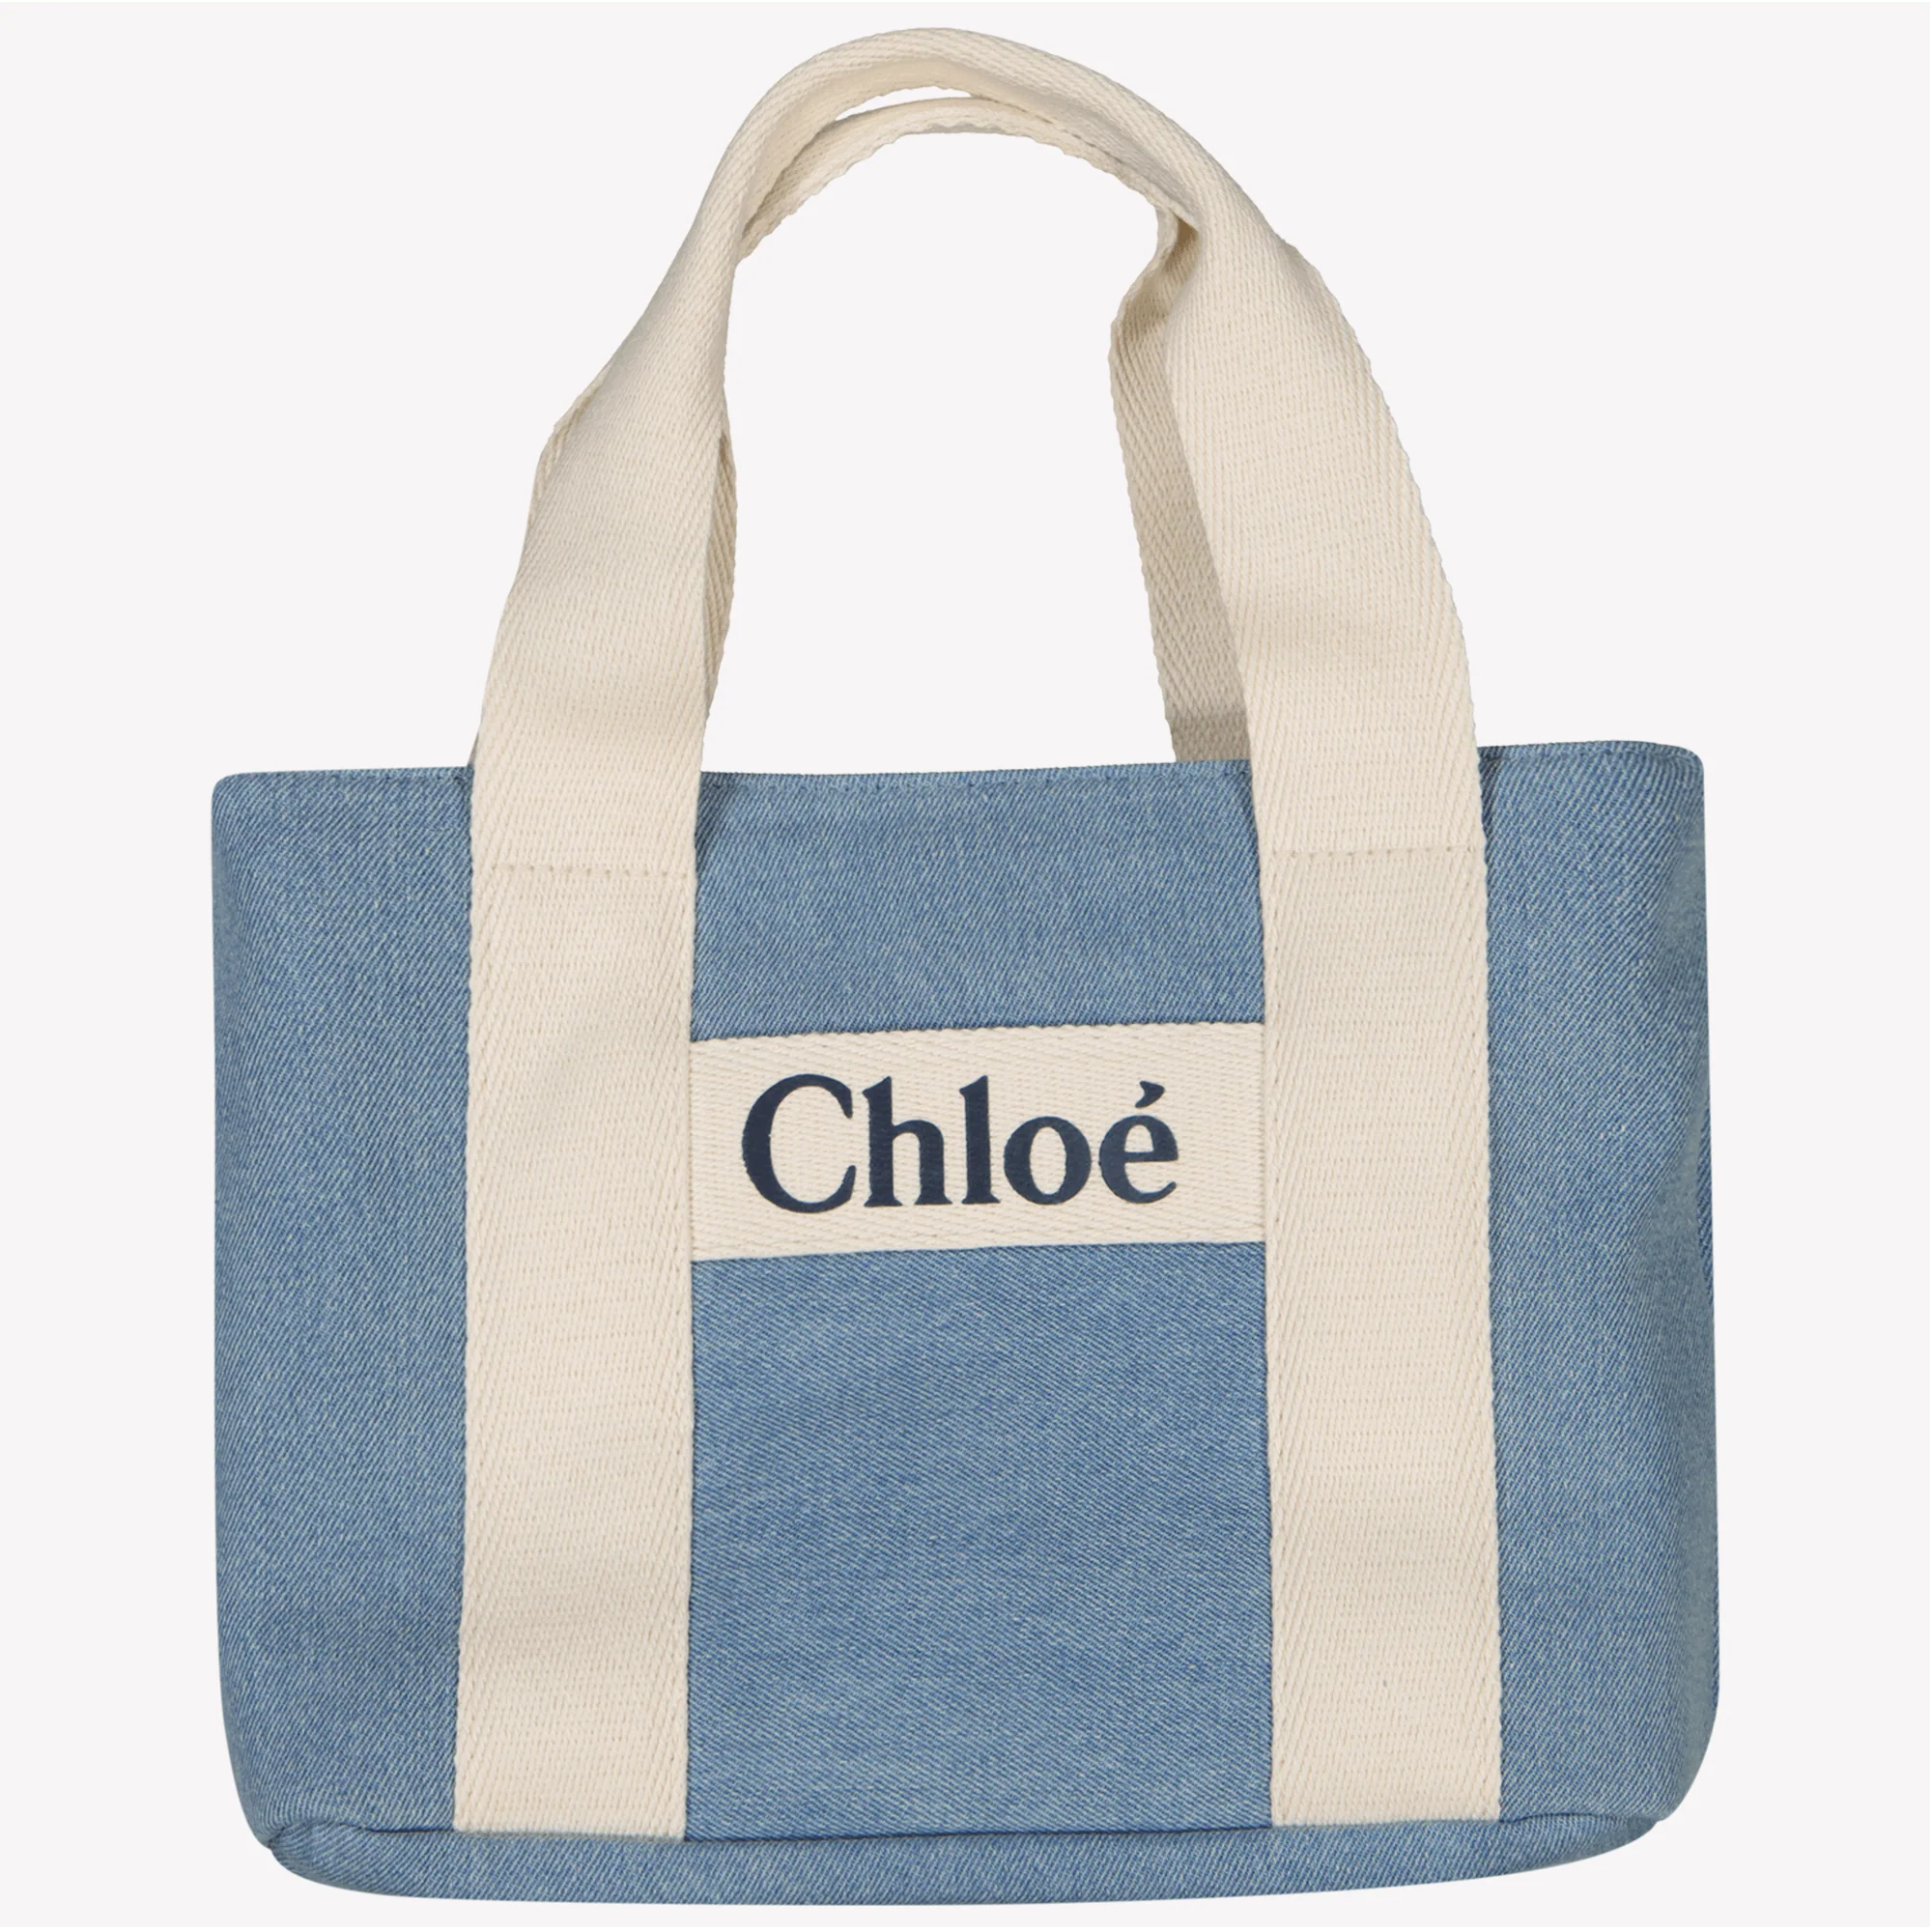 Chloe Kinder meisjes tas